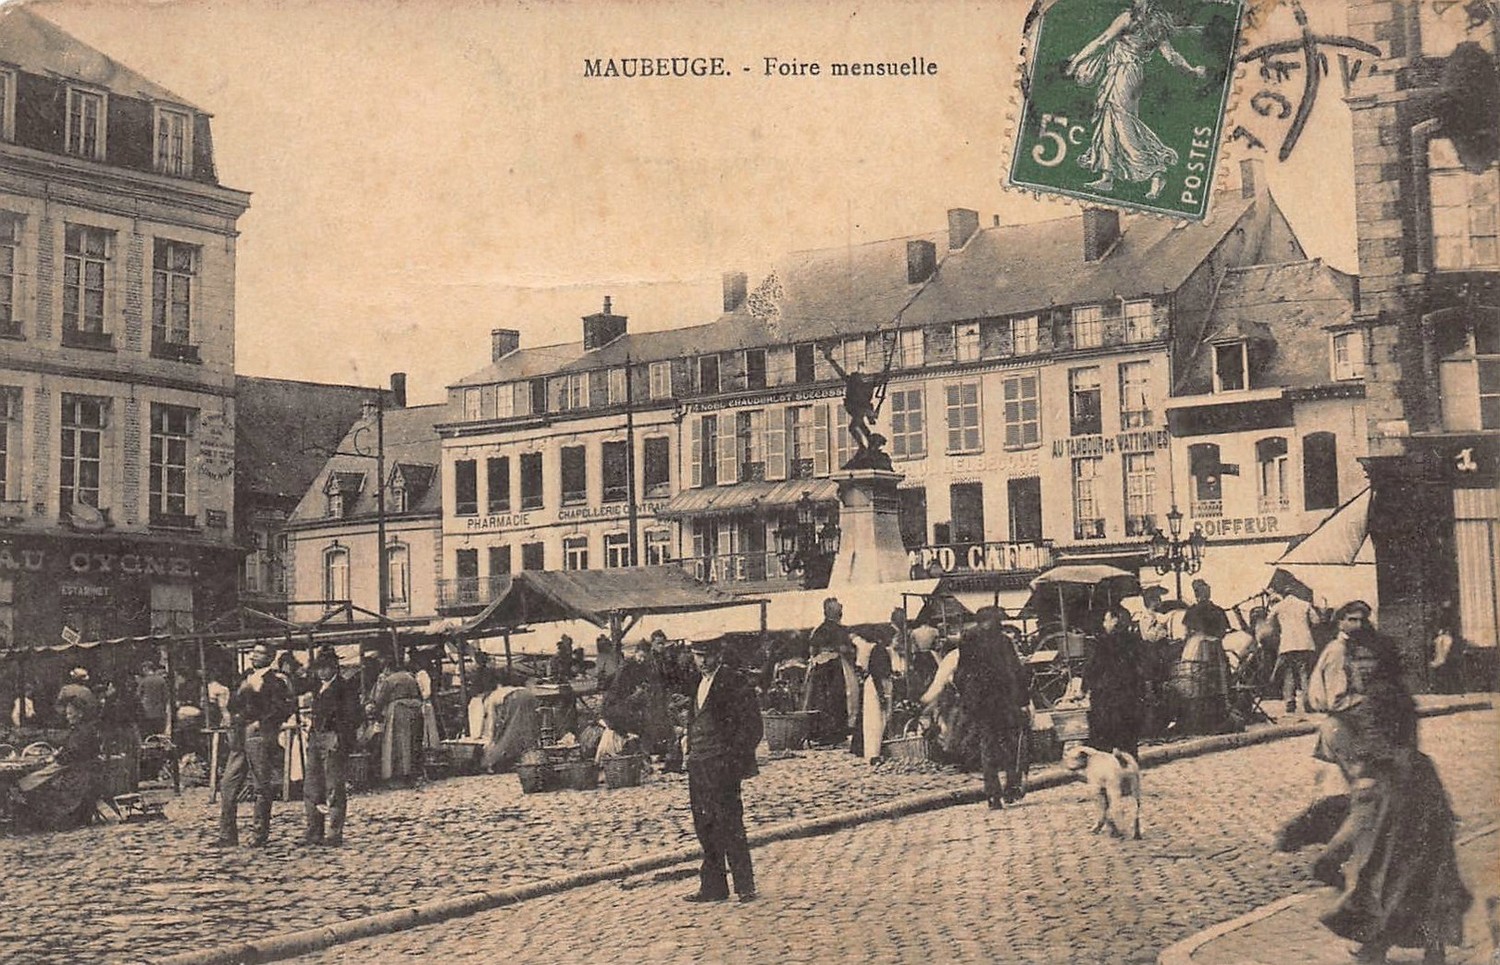 Cartes postales de Maubeuge, Marché aux Herbes.